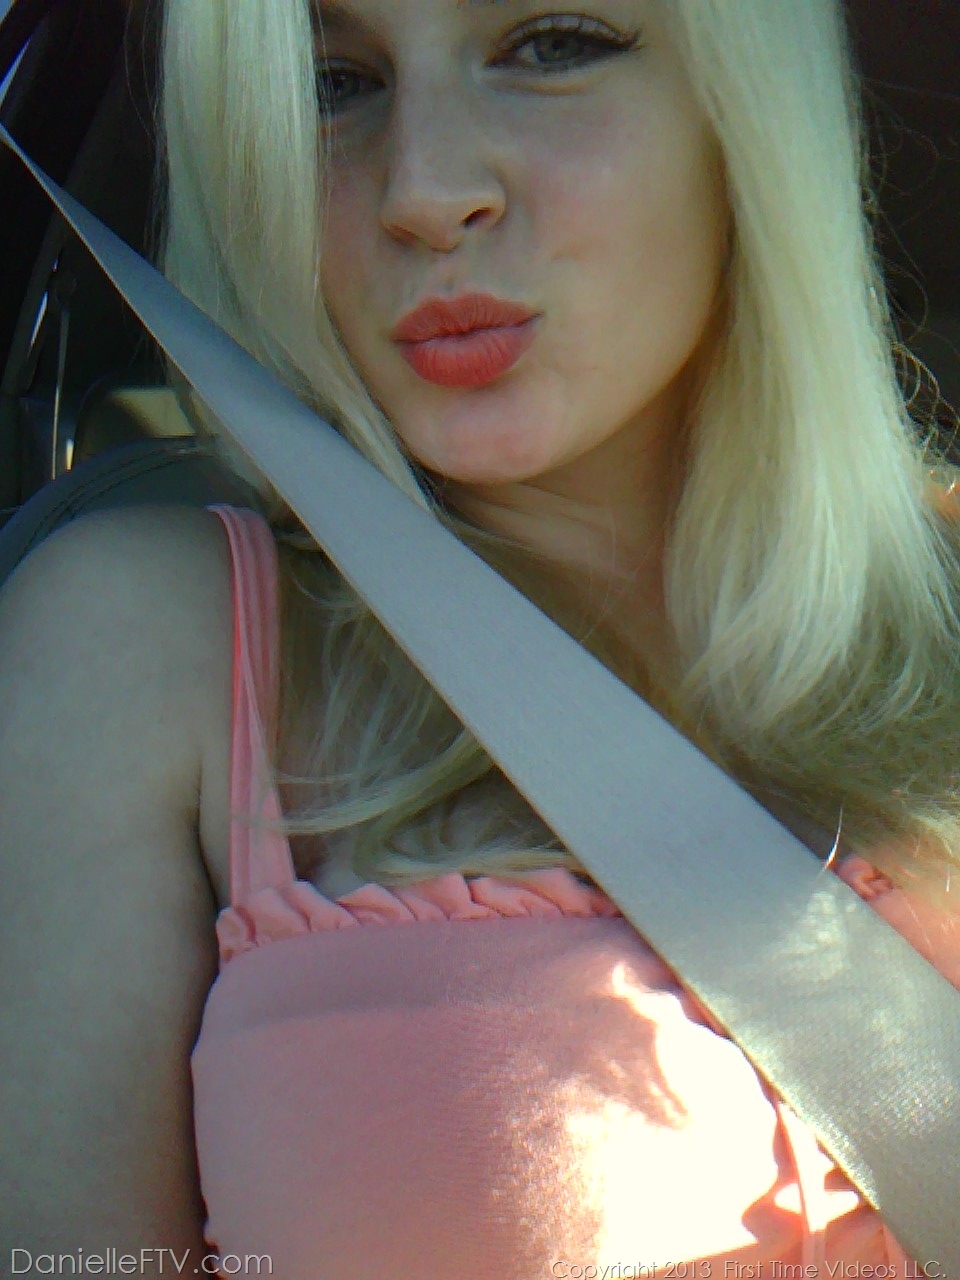 Blonde amateur Danielle Ftv dons numerous outfits for non nude selfies 色情照片 #422634174 | Danielle FTV Pics, Danielle Delaunay, Selfie, 手机色情